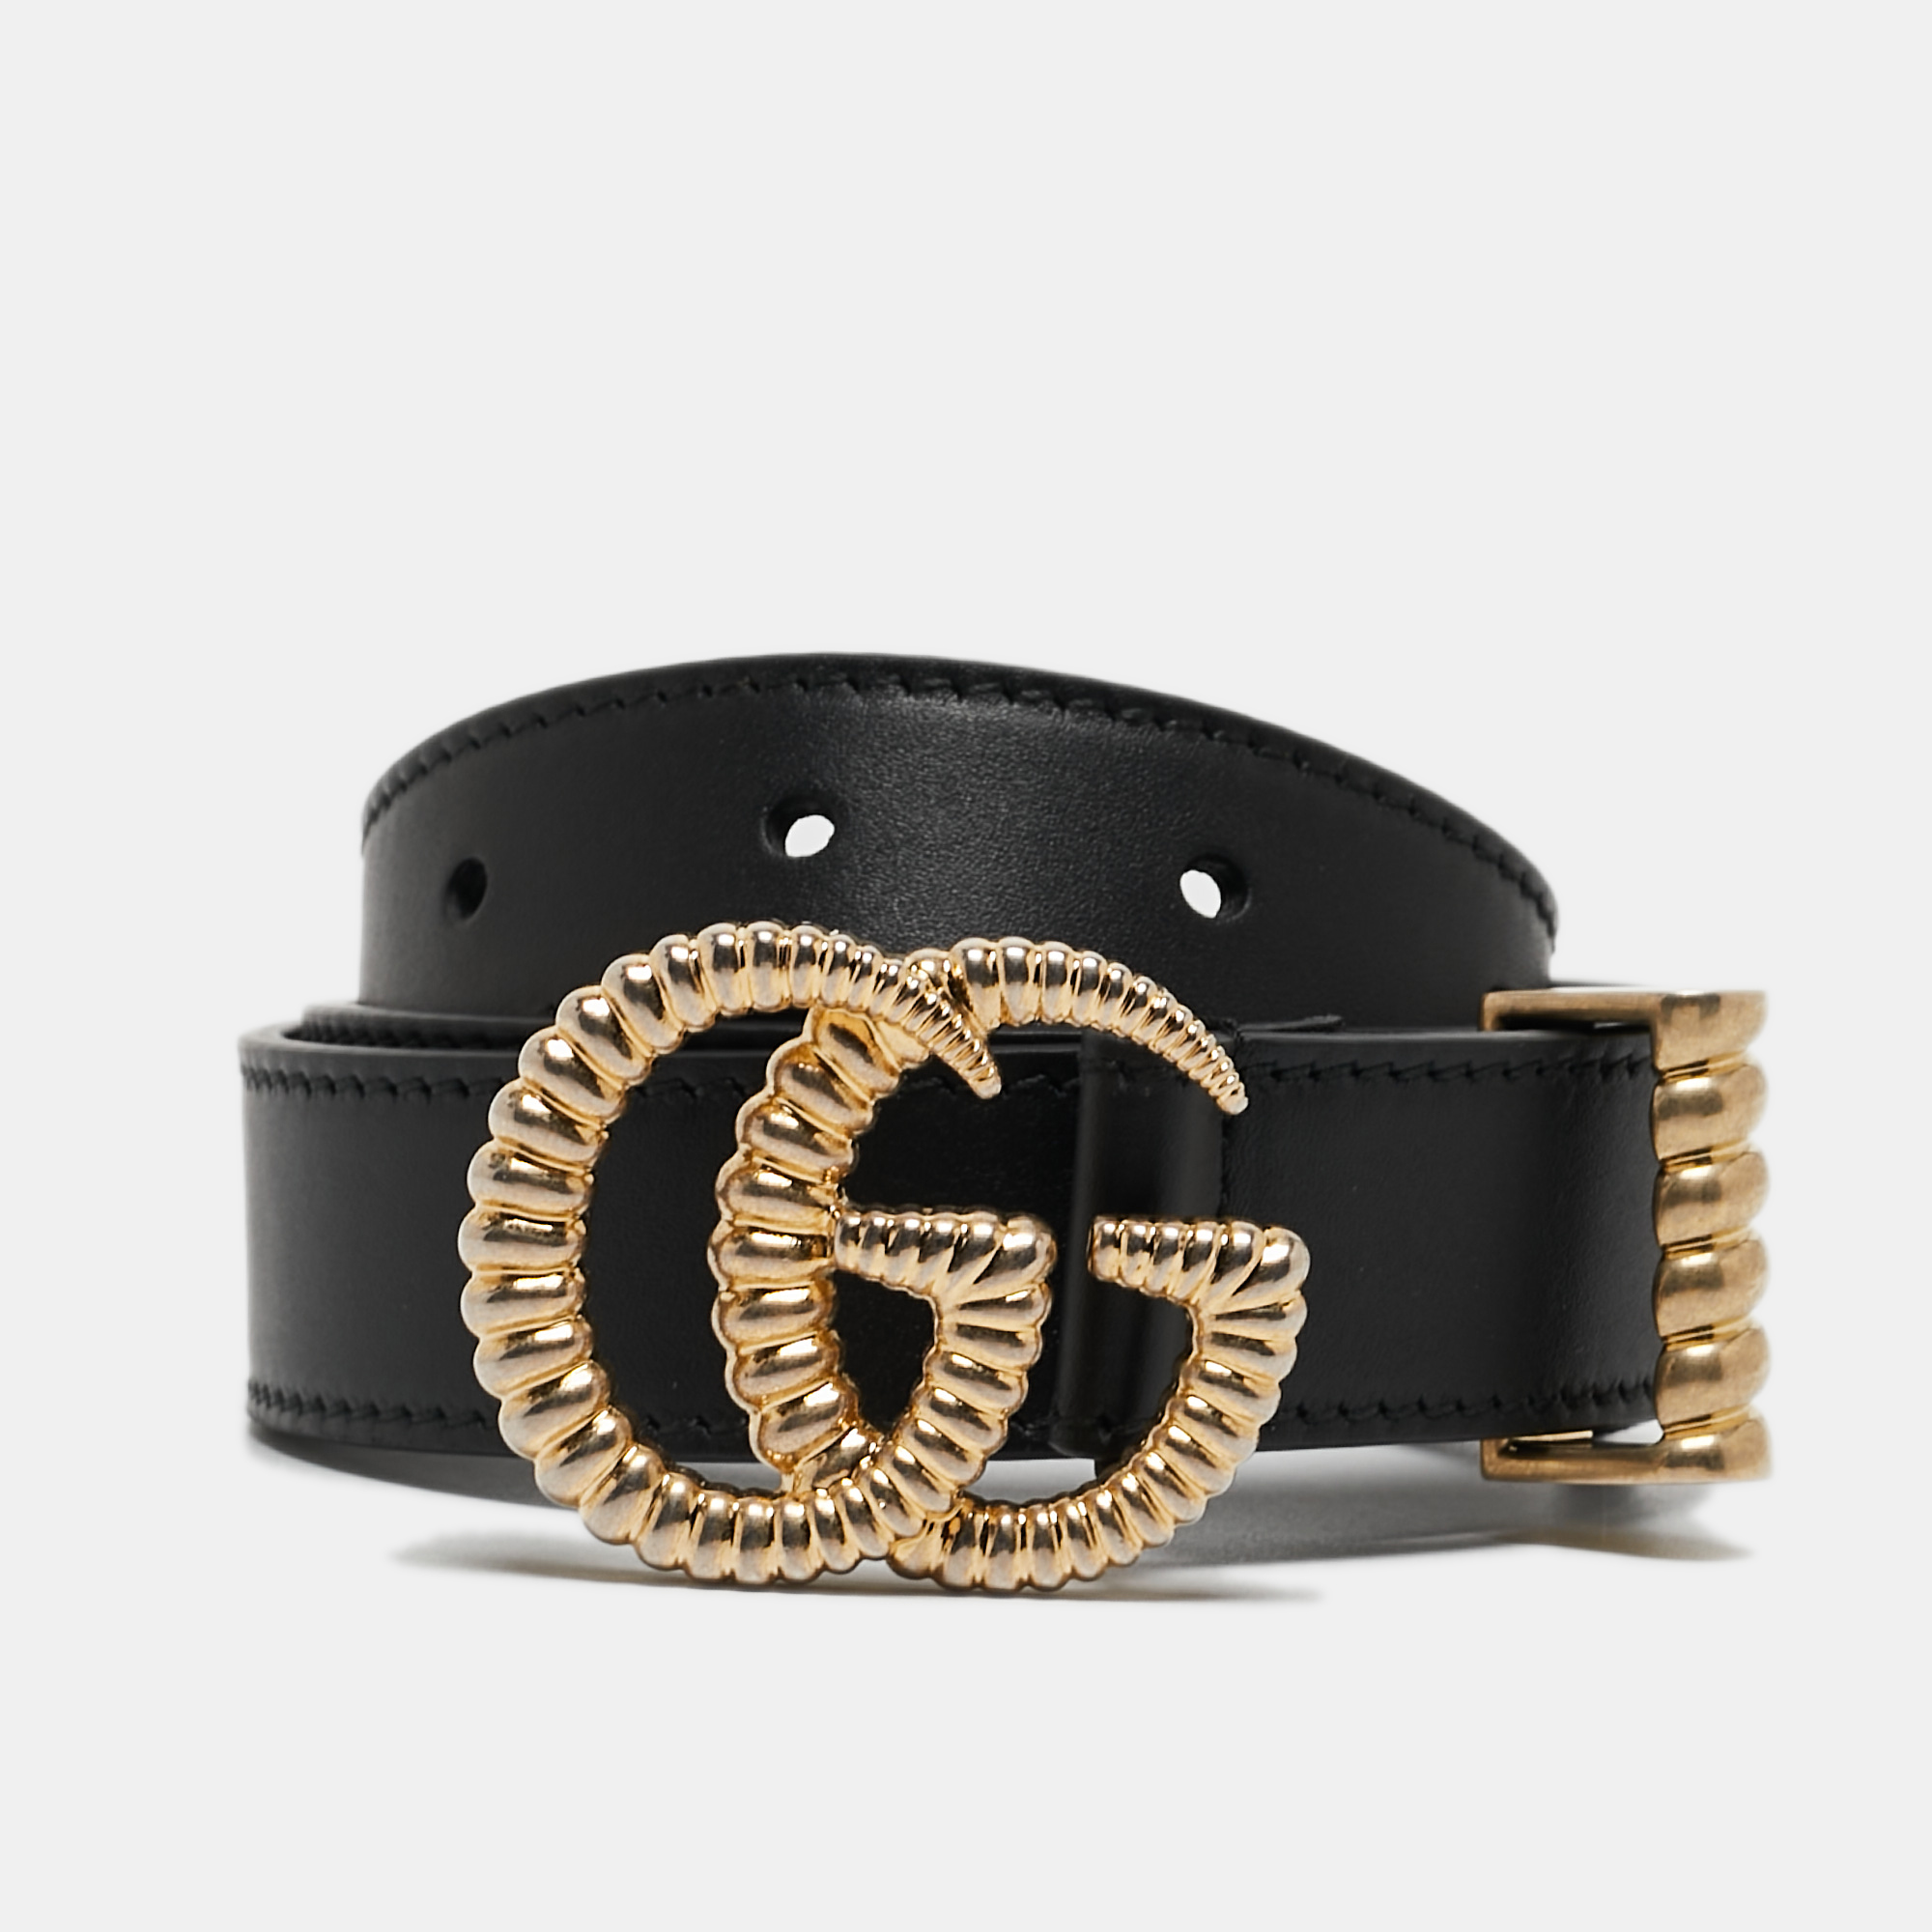 Gucci Black Leather Torchon Double G Buckle Slim Belt 80 CM